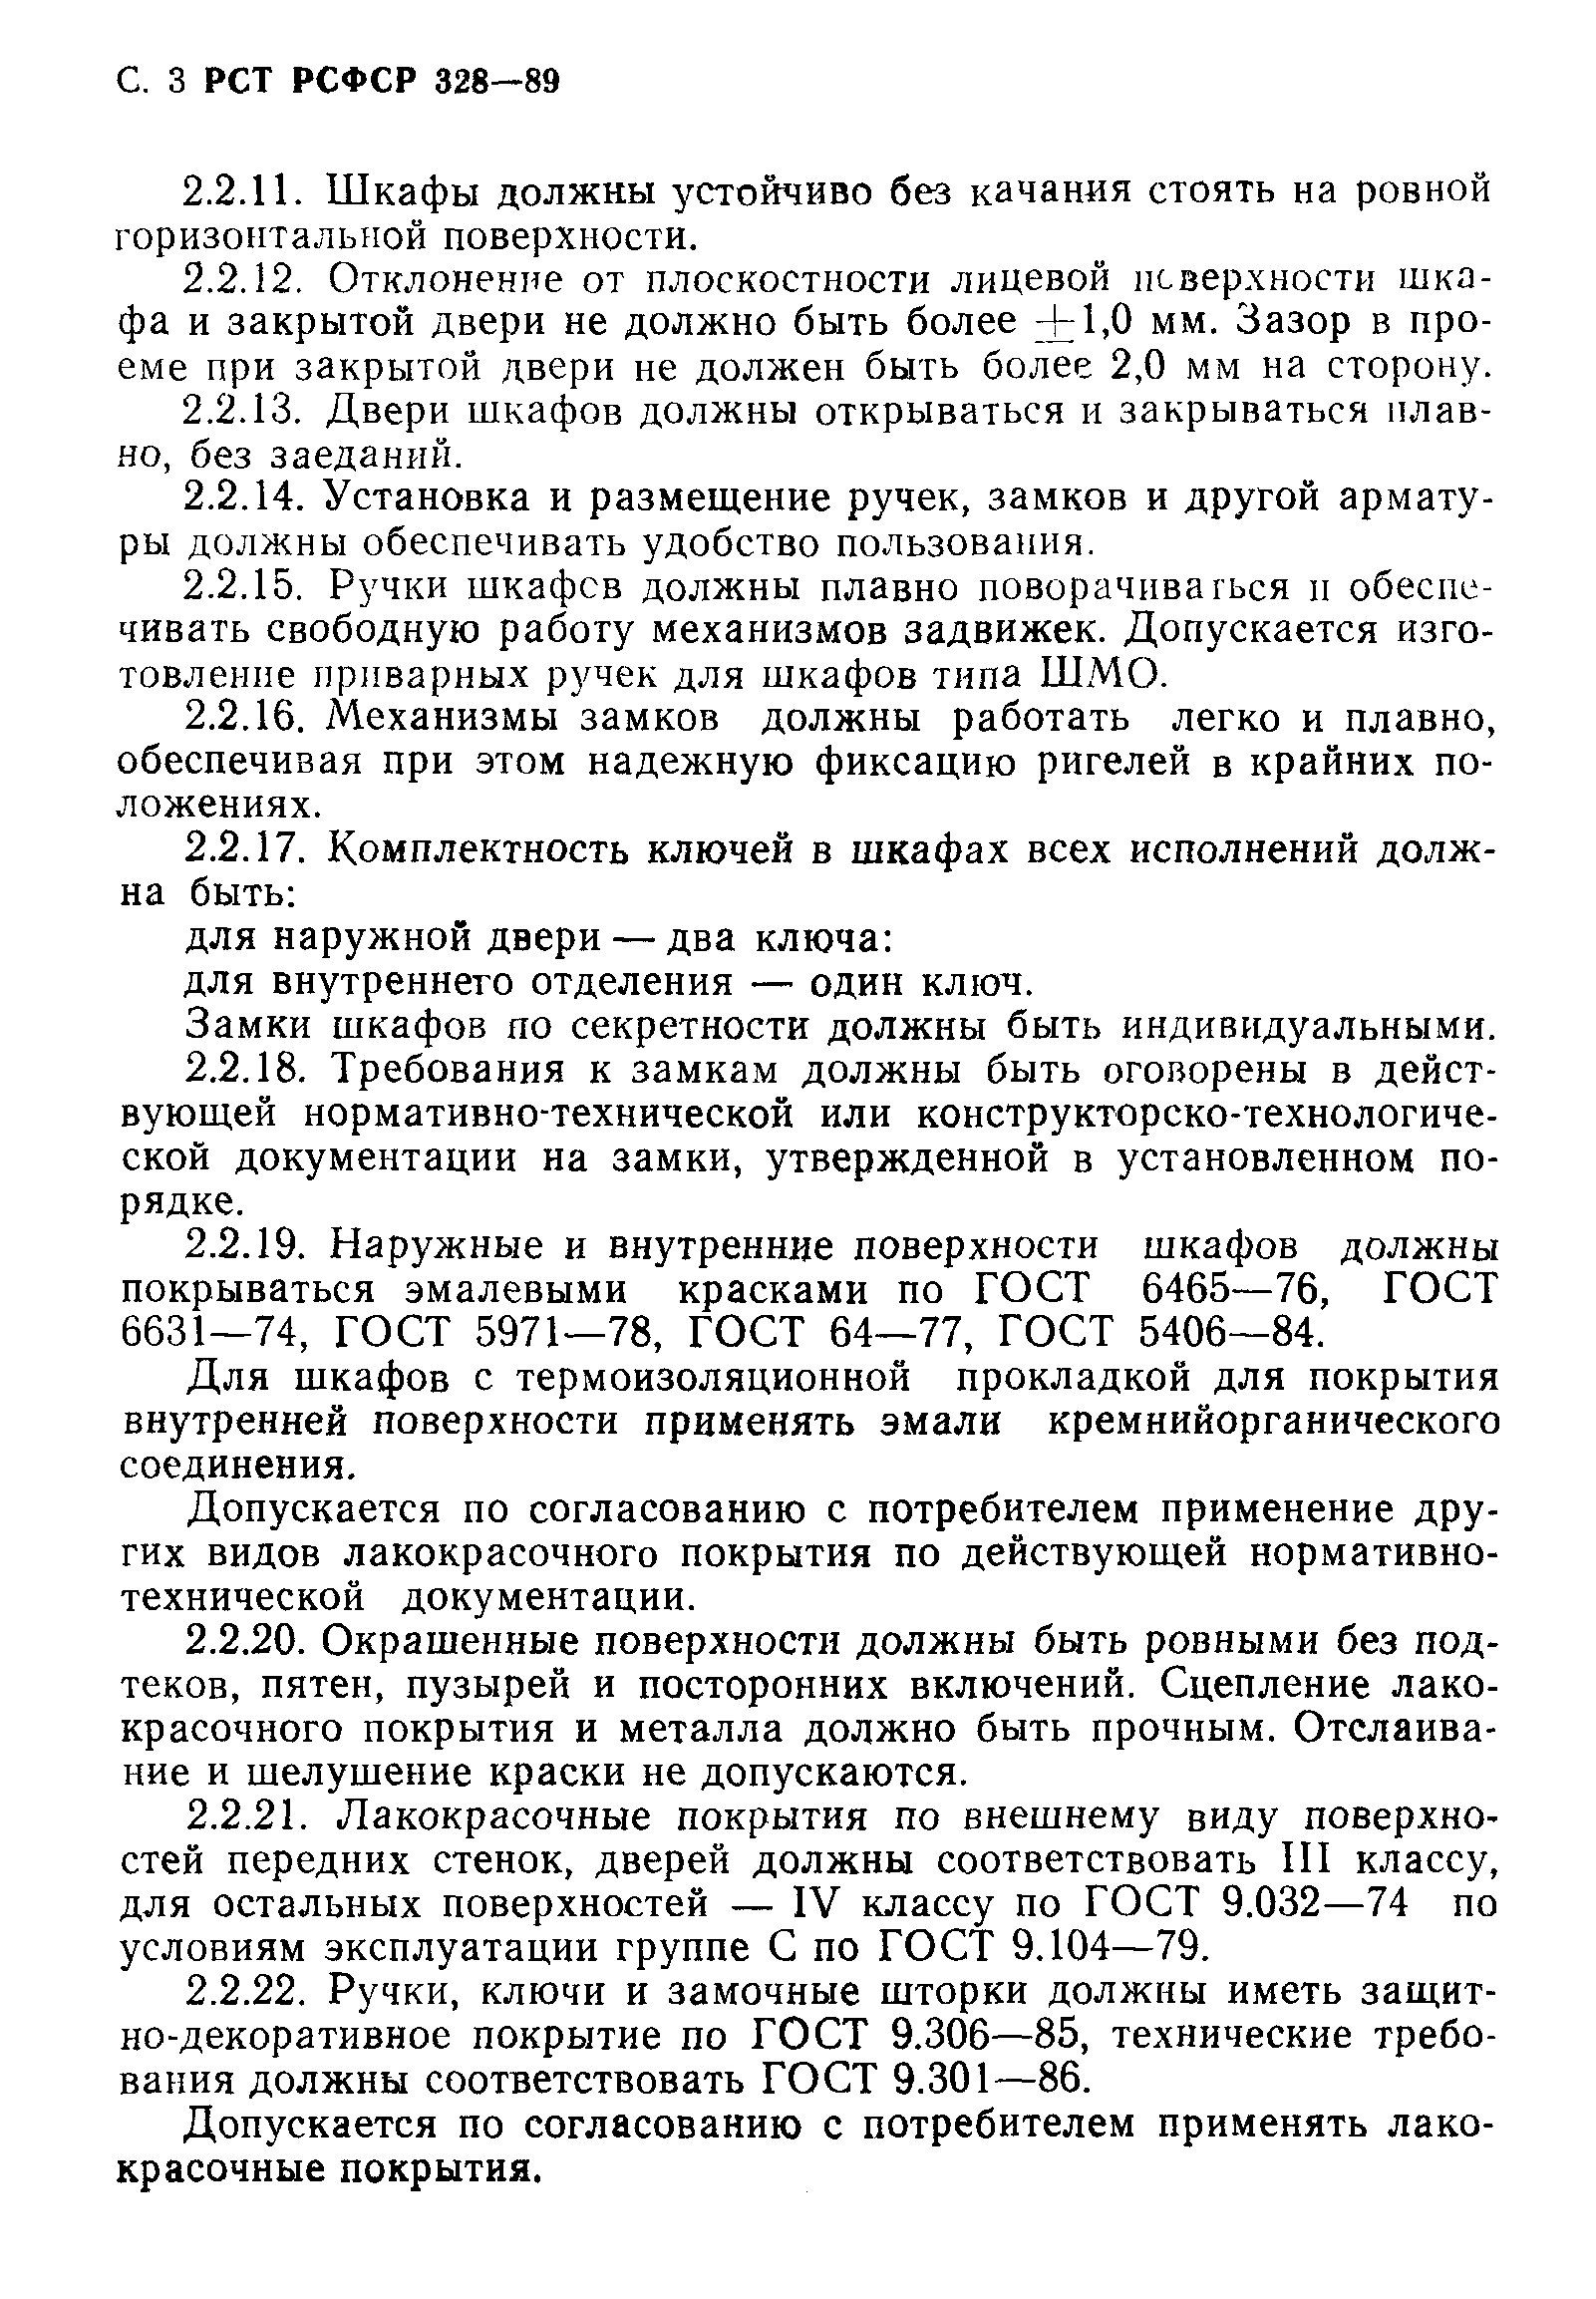 РСТ РСФСР 328-89